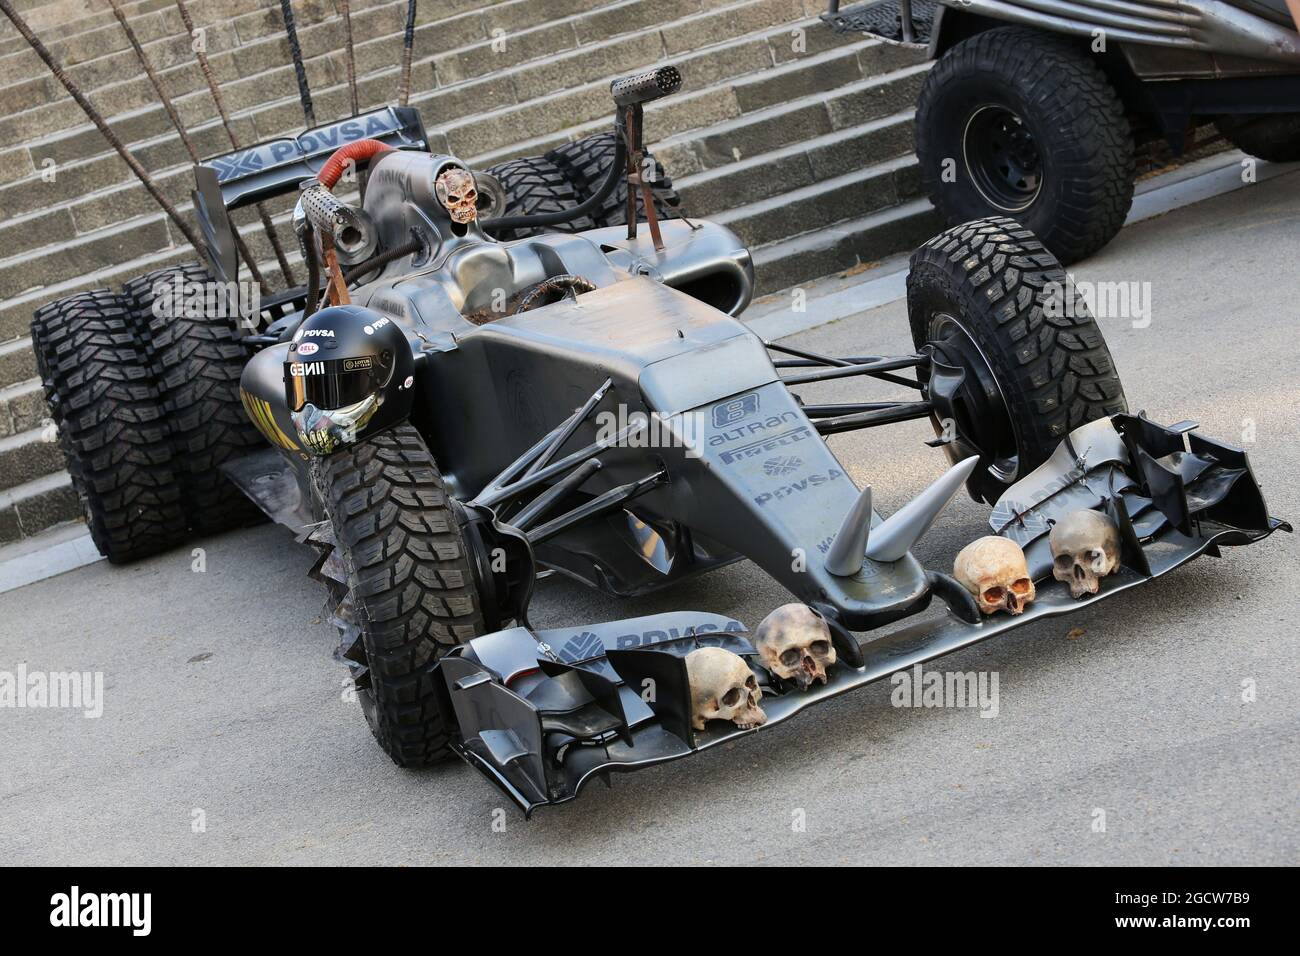 L'écurie Lotus F1 Team faisant la promotion du film Mad Max: Fury Road.  Grand Prix d'Espagne, vendredi 8 mai 2015. Barcelone, Espagne Photo Stock -  Alamy